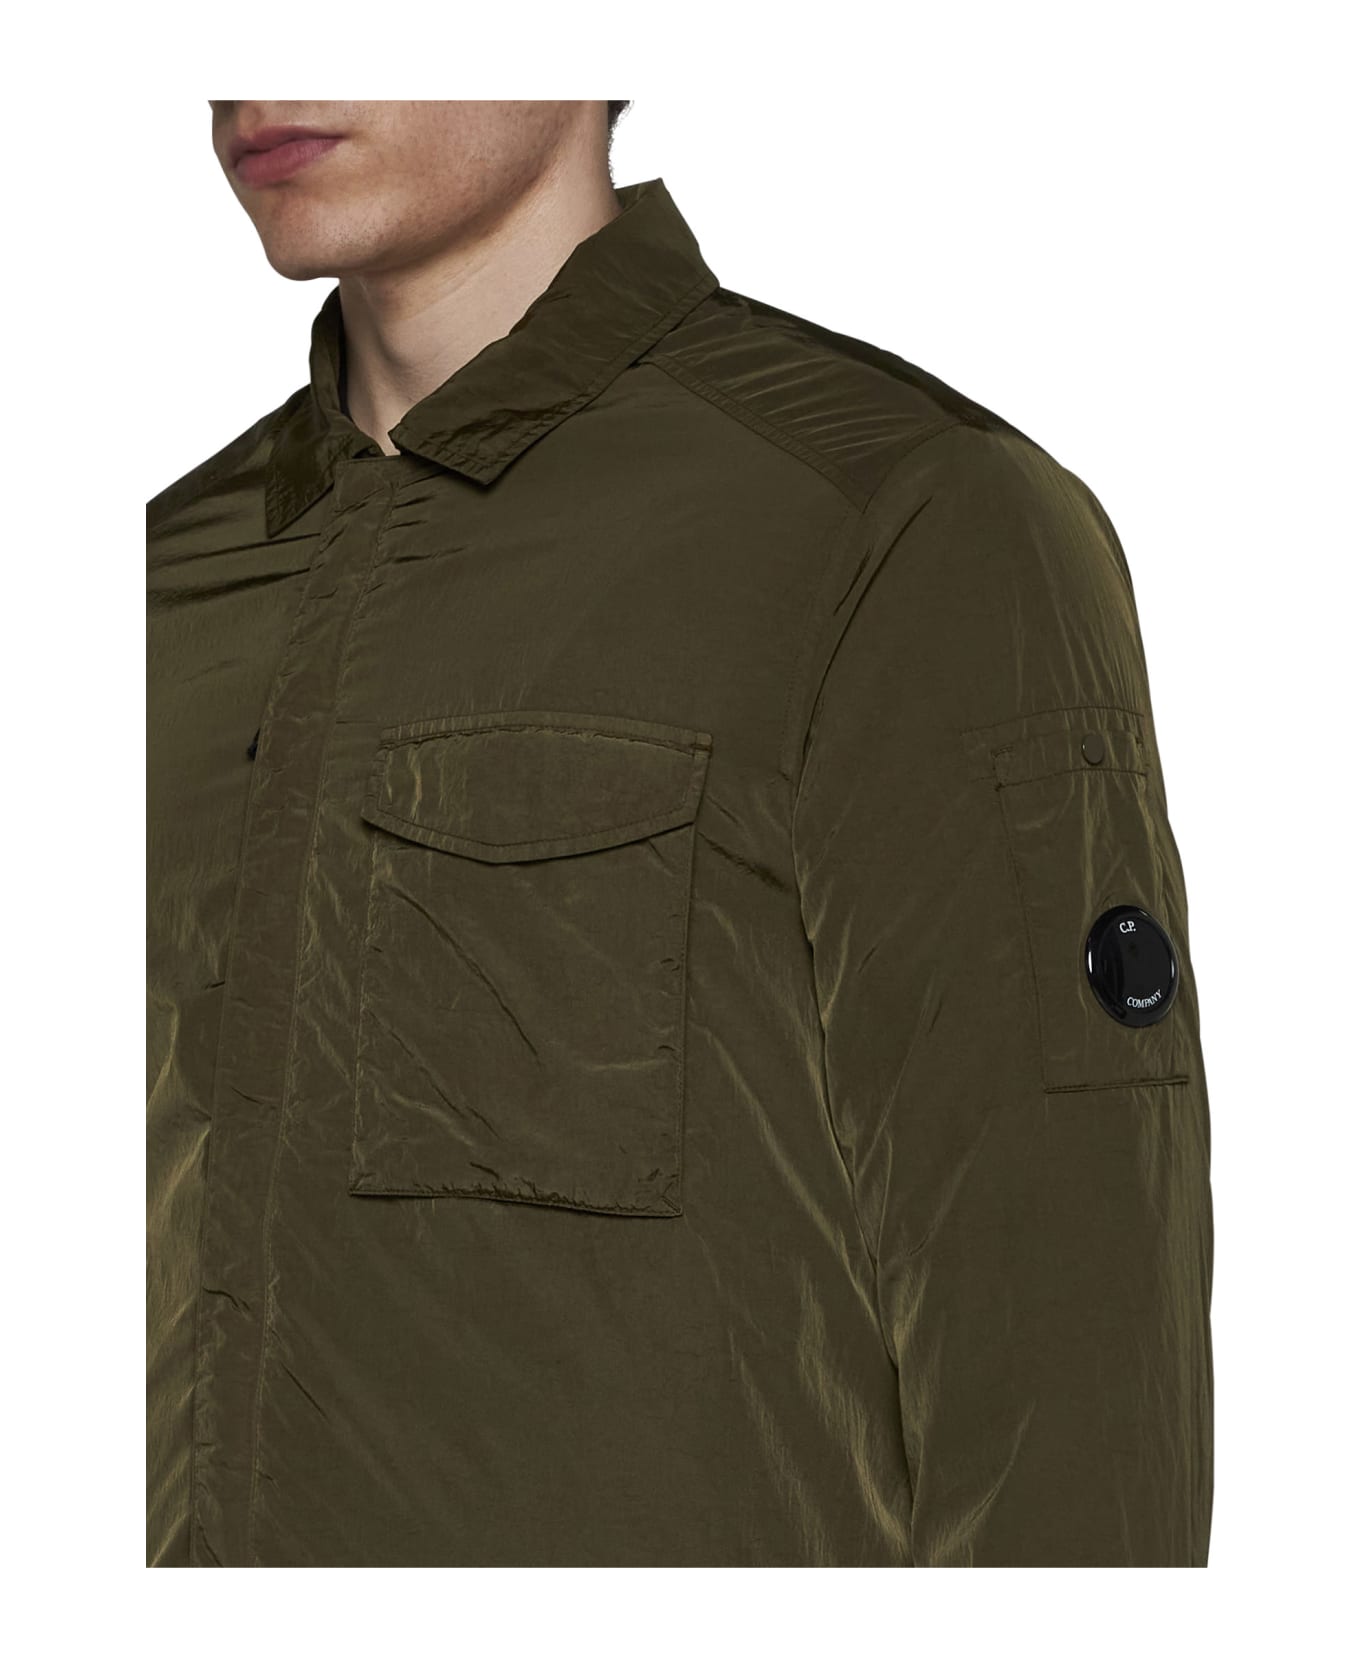 C.P. Company Jacket - Ivy green